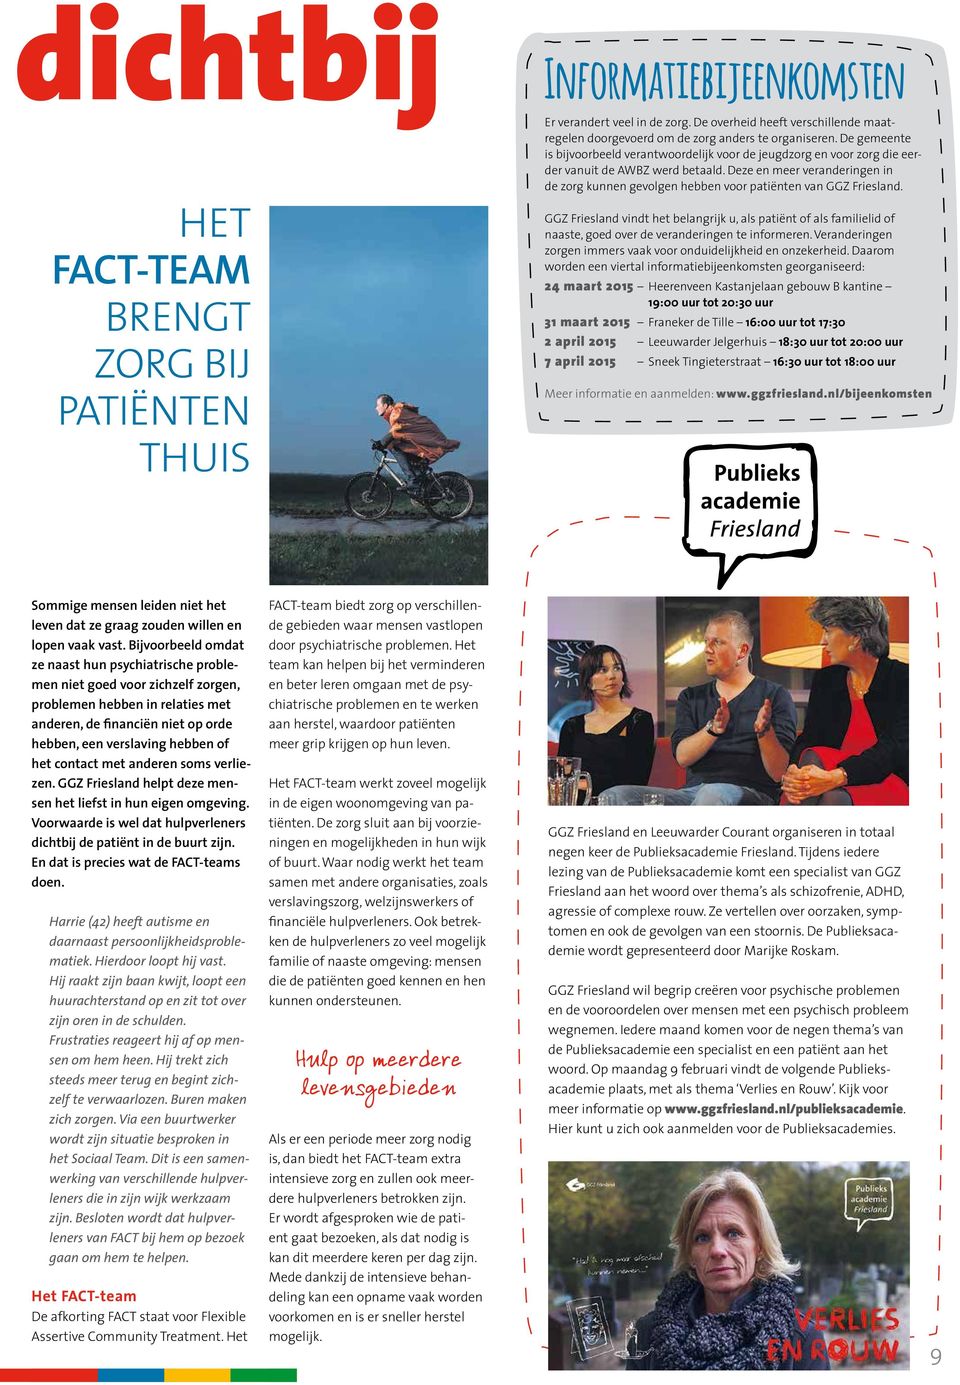 Deze en meer veranderingen in de zorg kunnen gevolgen hebben voor patiënten van GGZ Friesland.